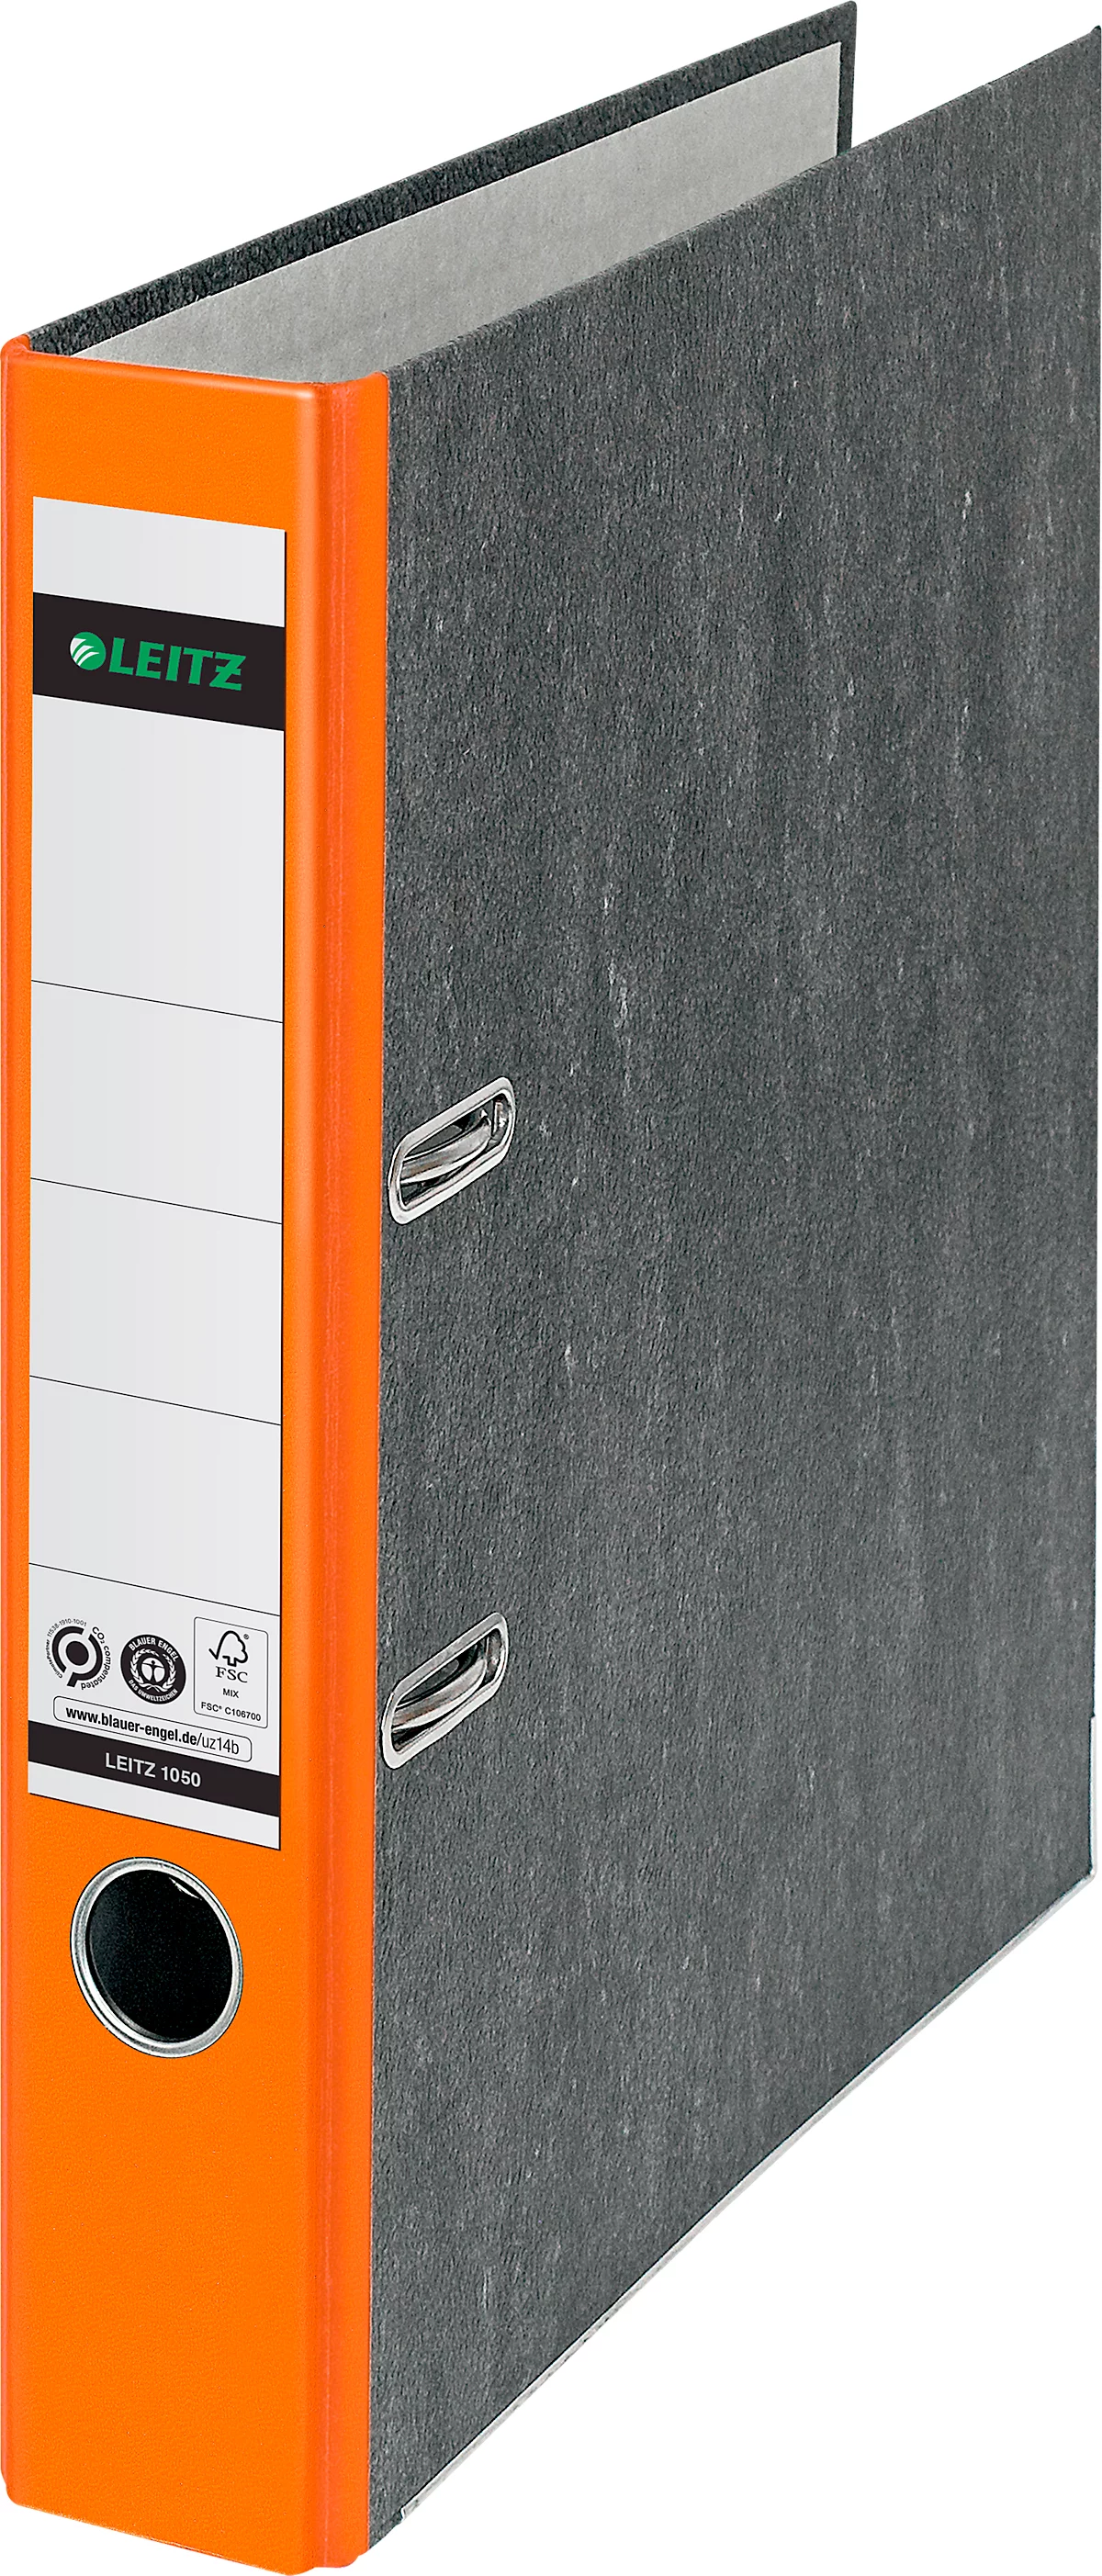 LEITZ® Ordner 1050, DIN A4, Rückenbreite 52 mm, orange